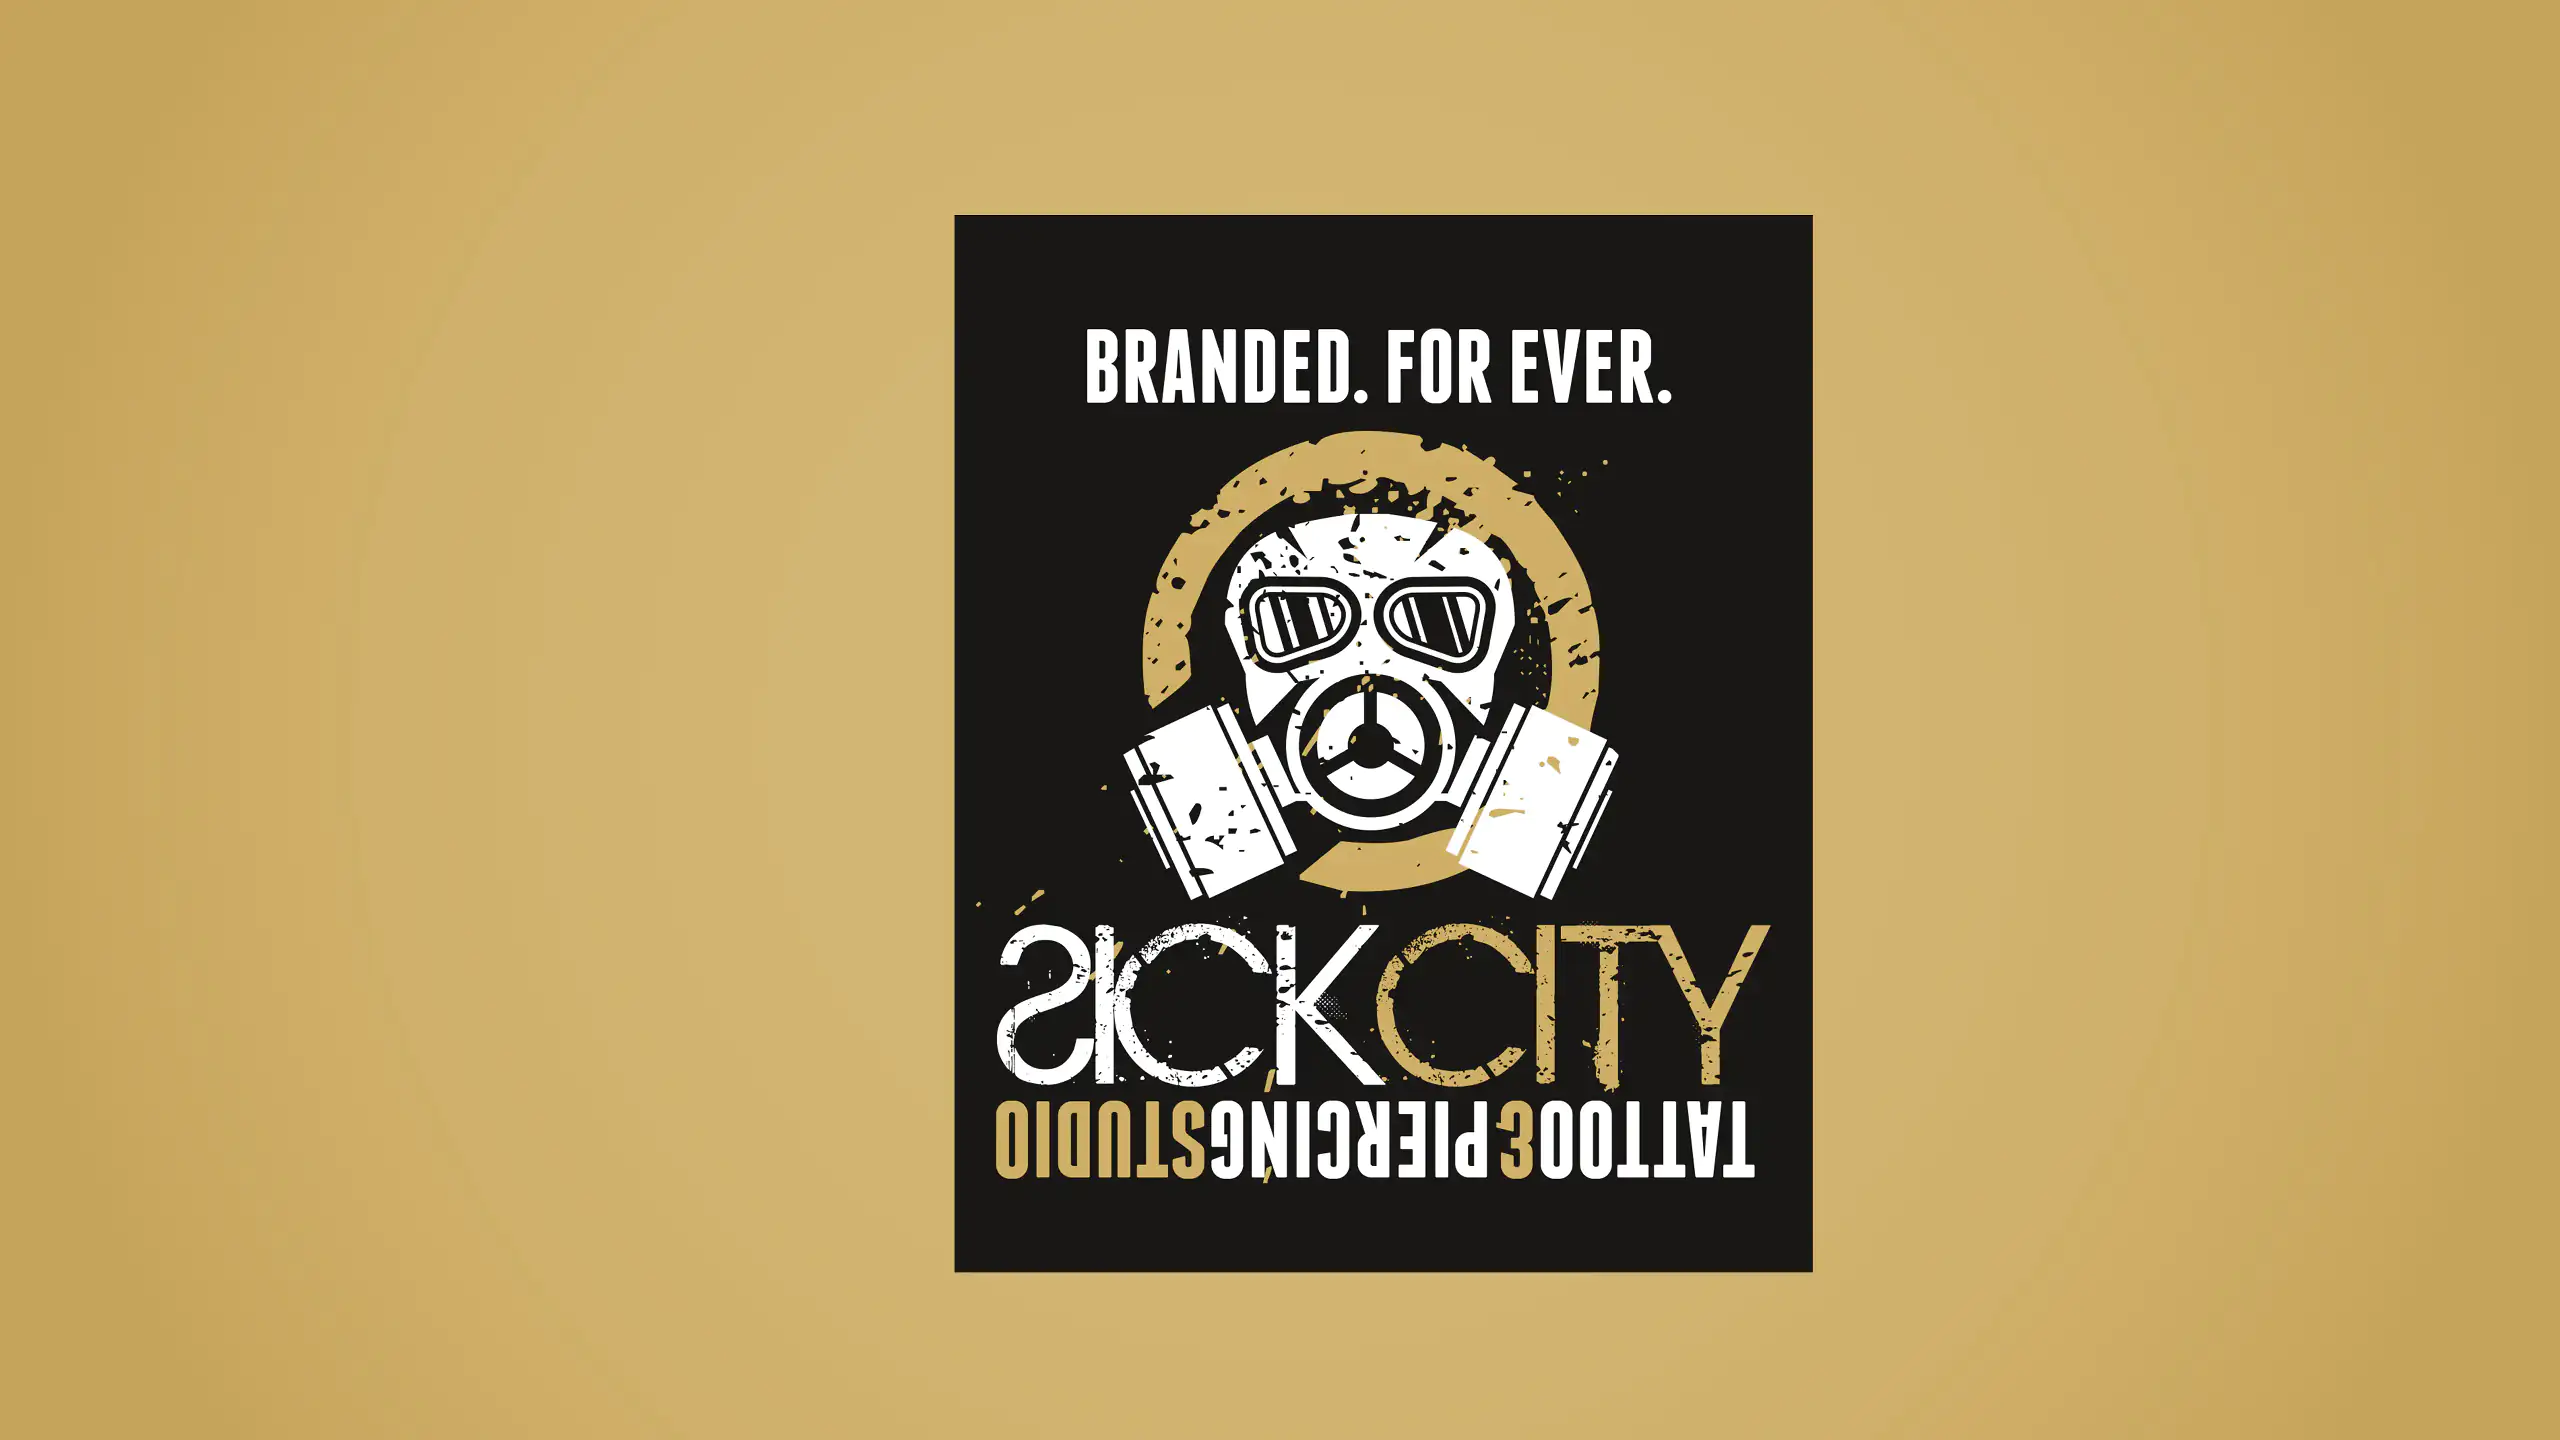 Logo des Tattoo- & Piercing-Studios Sick City mit Slogan "Branded. For ever." mit Gasmaske als Signet auf hellbraunem Hintergrund